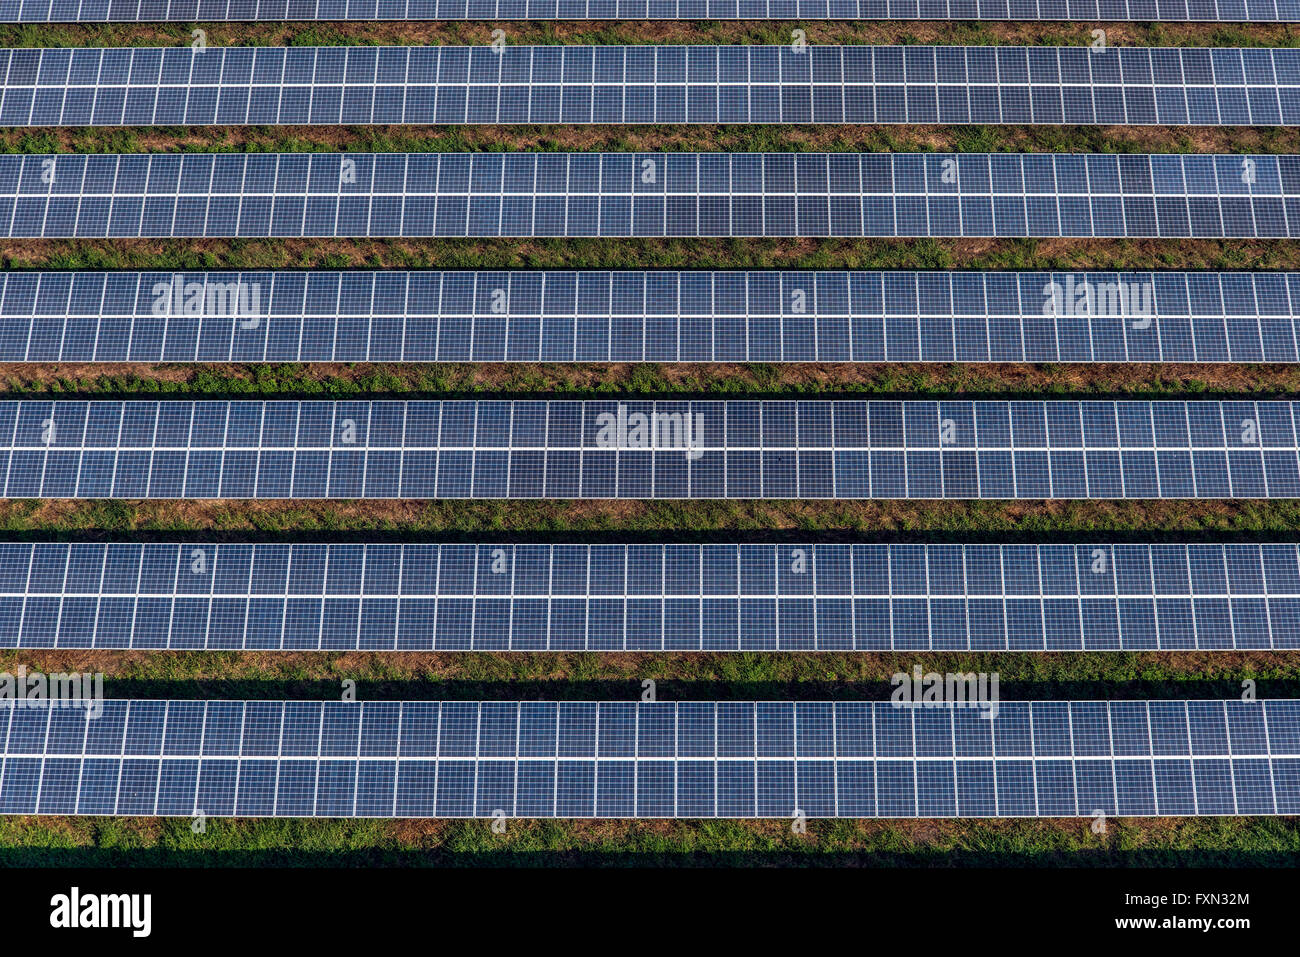 Ferme solaire, panneaux solaires vue aérienne Banque D'Images